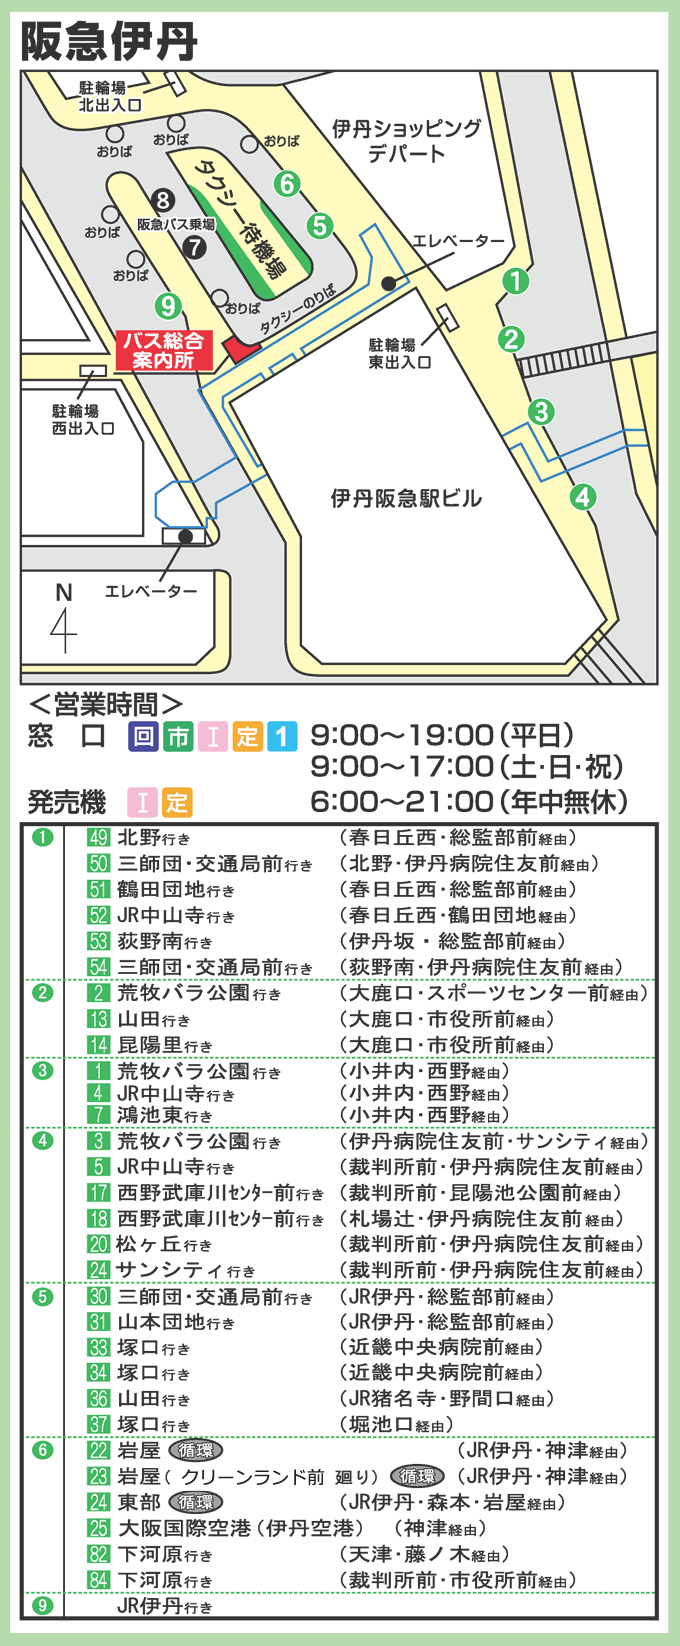 阪急伊丹駅より伊丹市バス